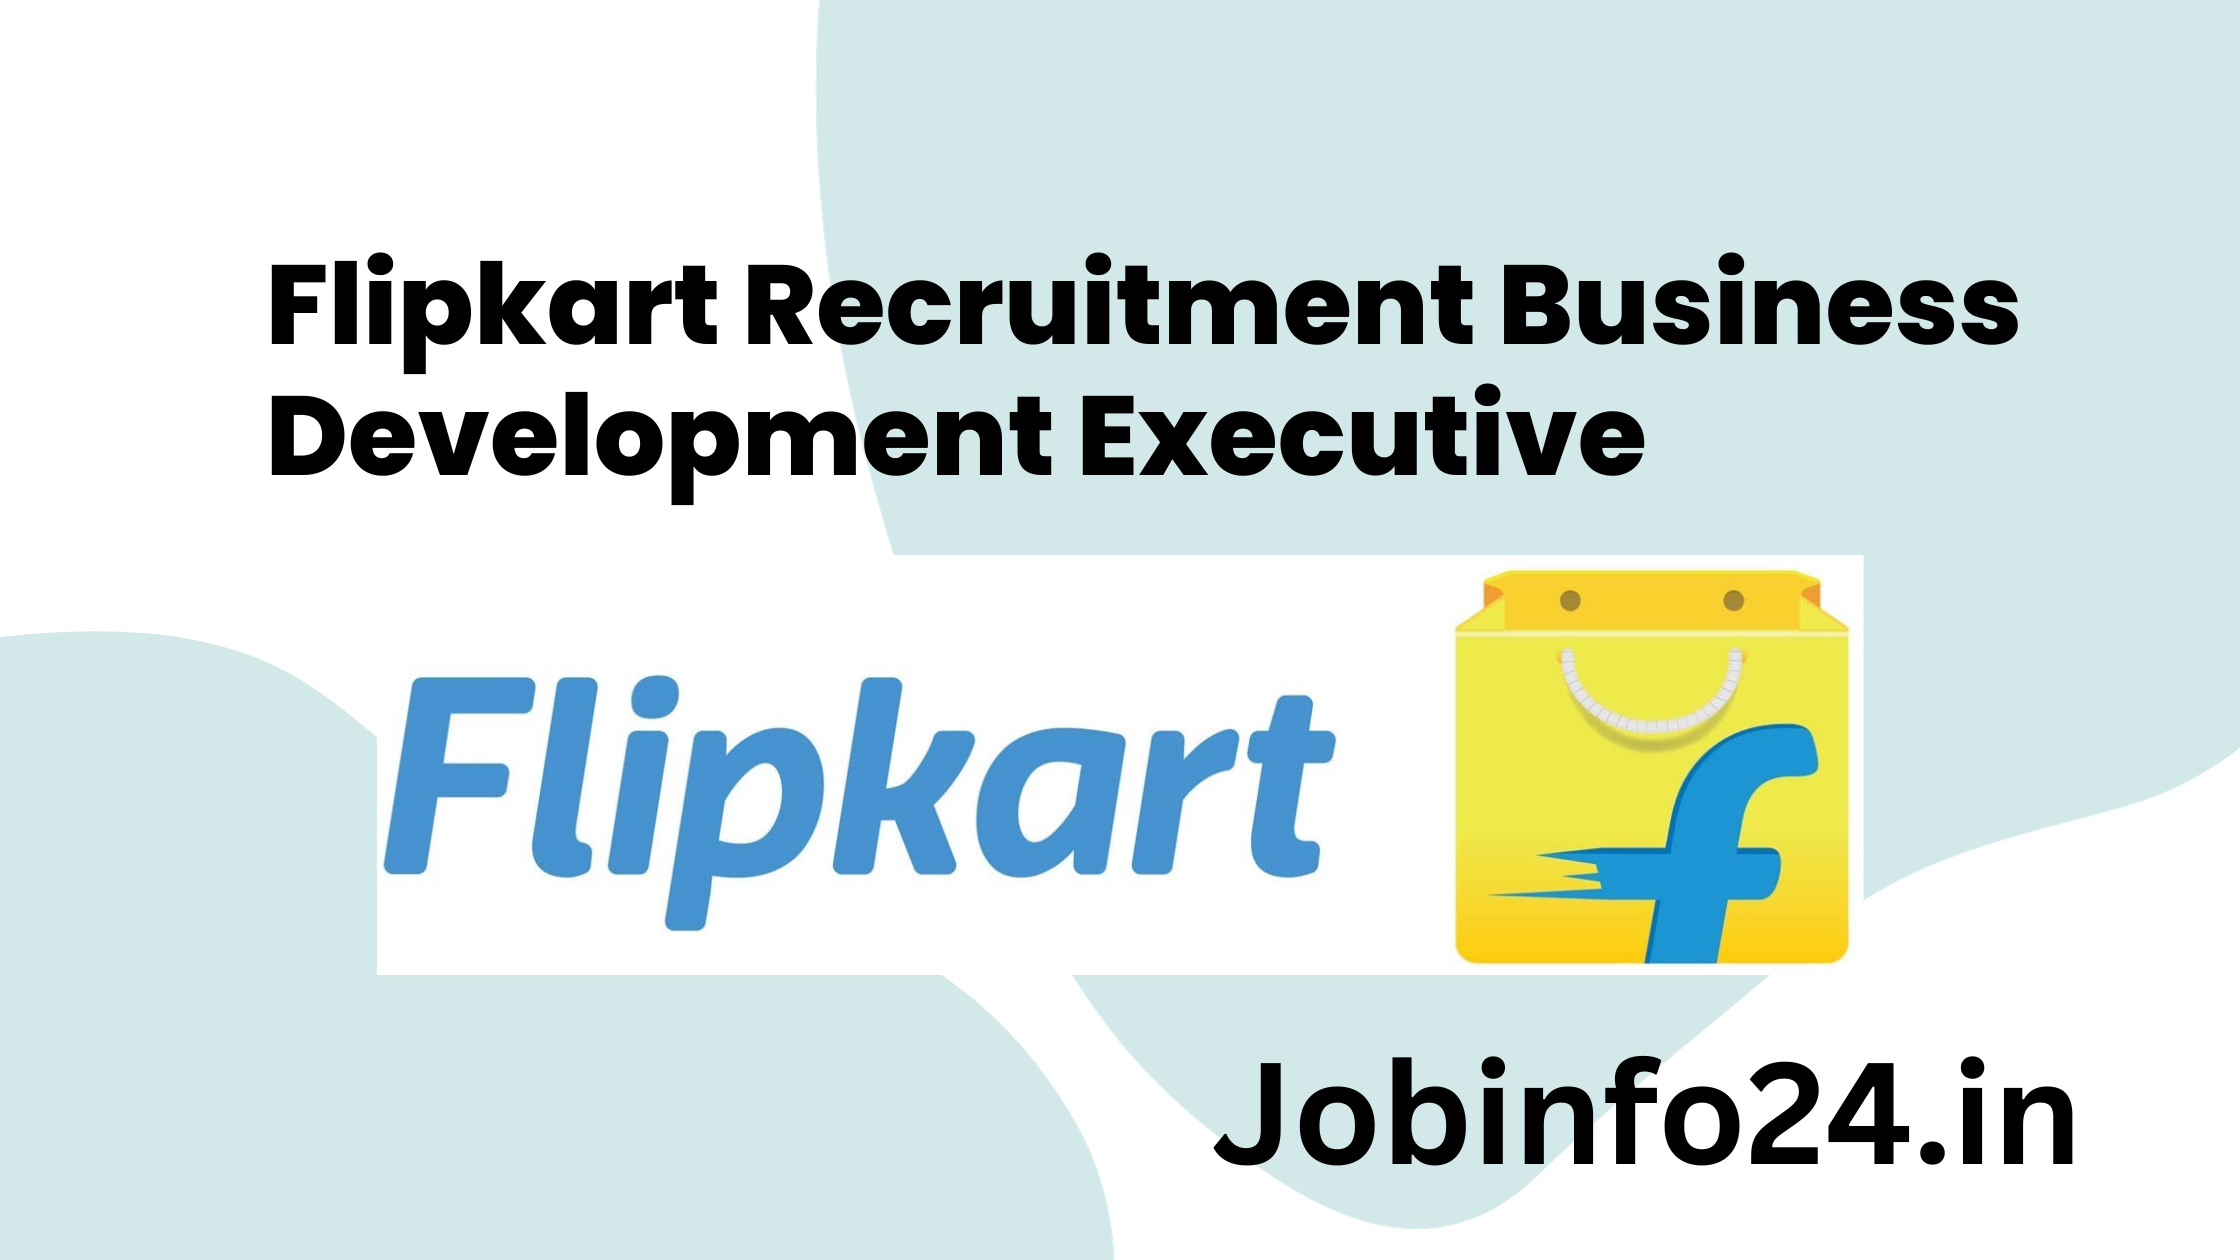 Flipkart Recruitment Business Development Executive